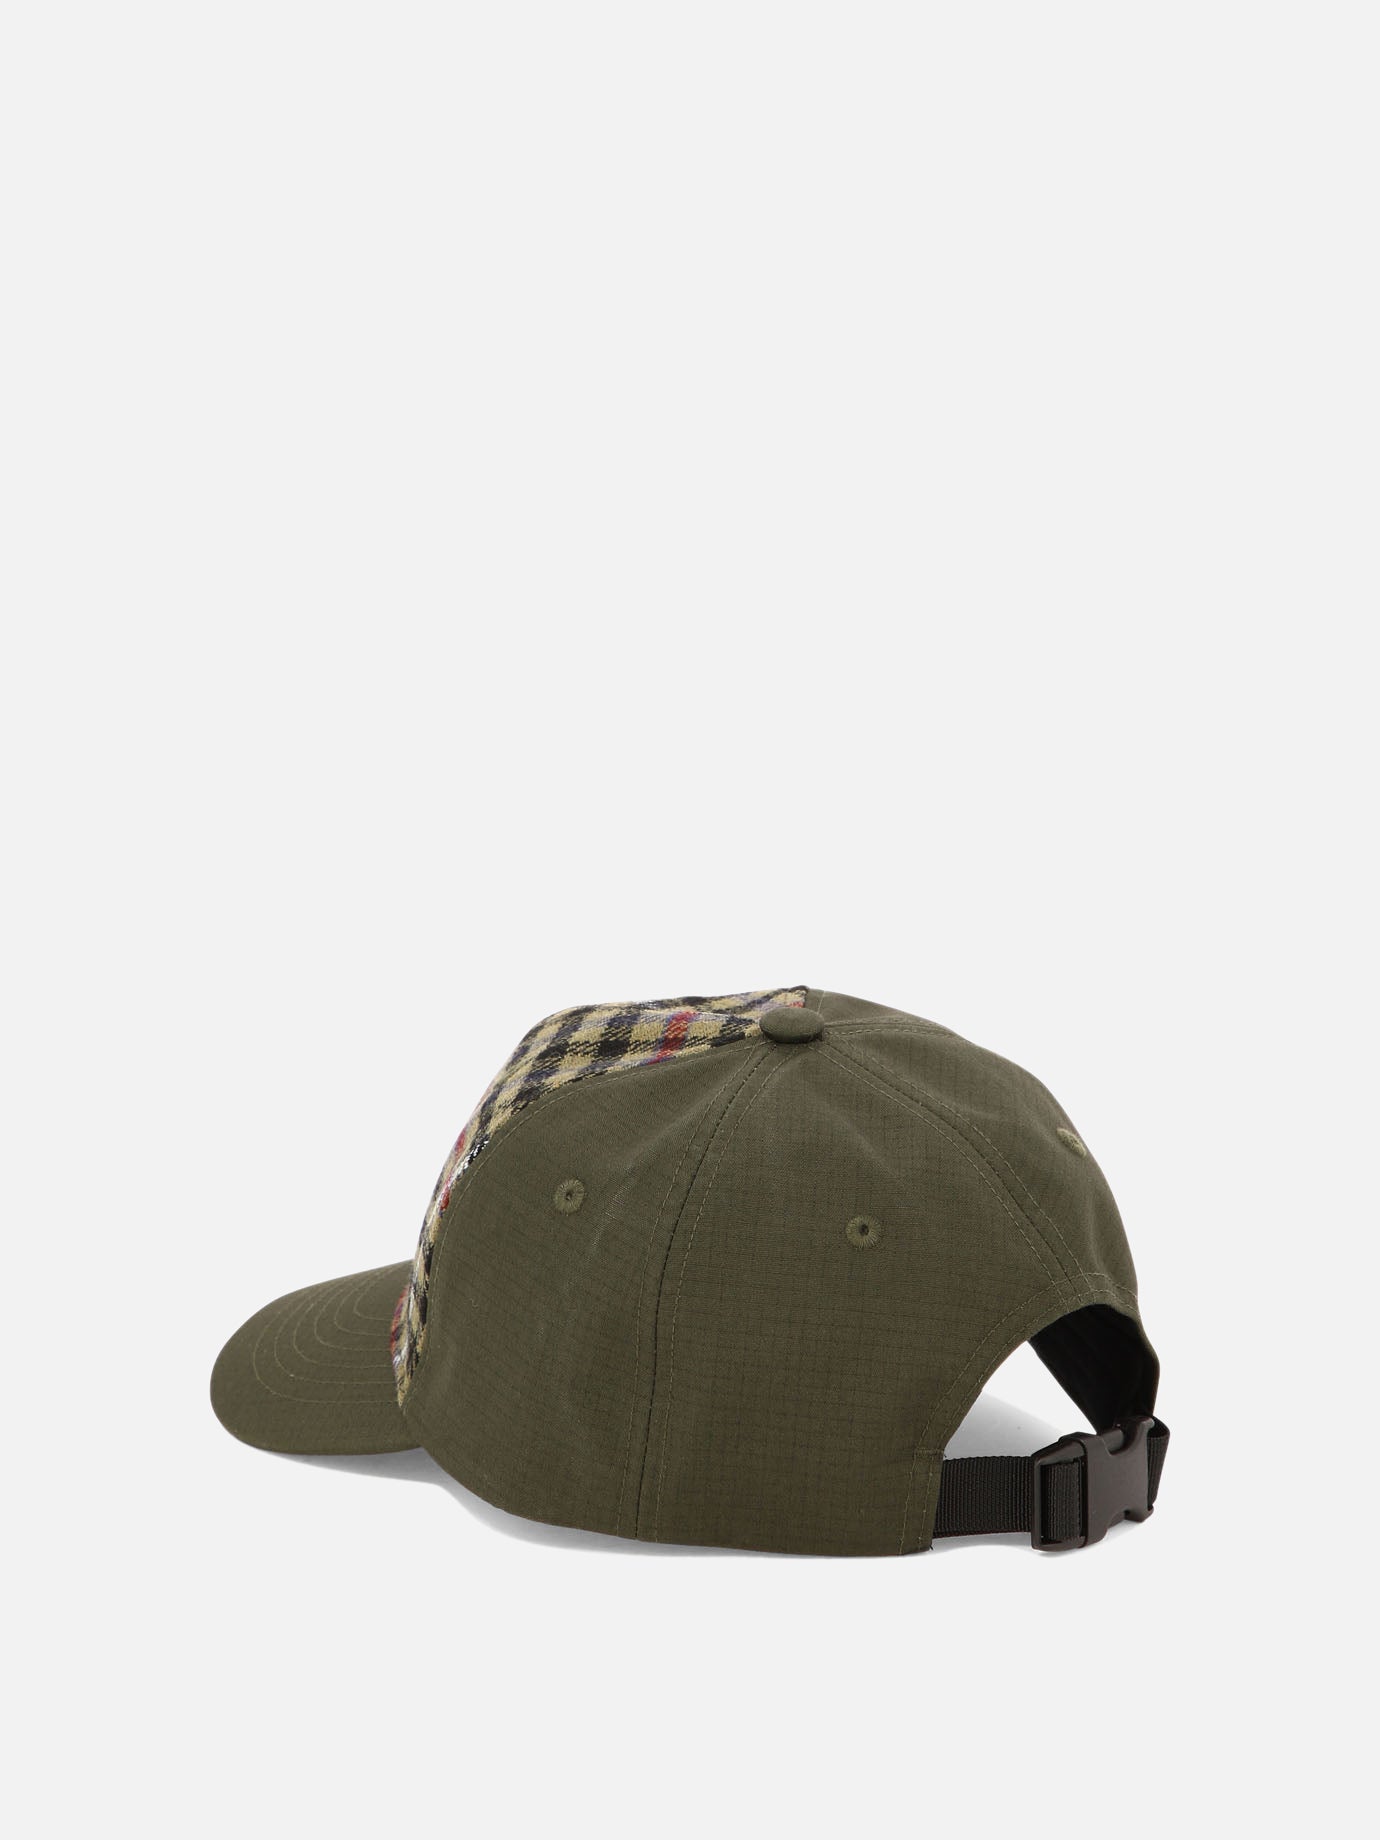 "Highbury" cap